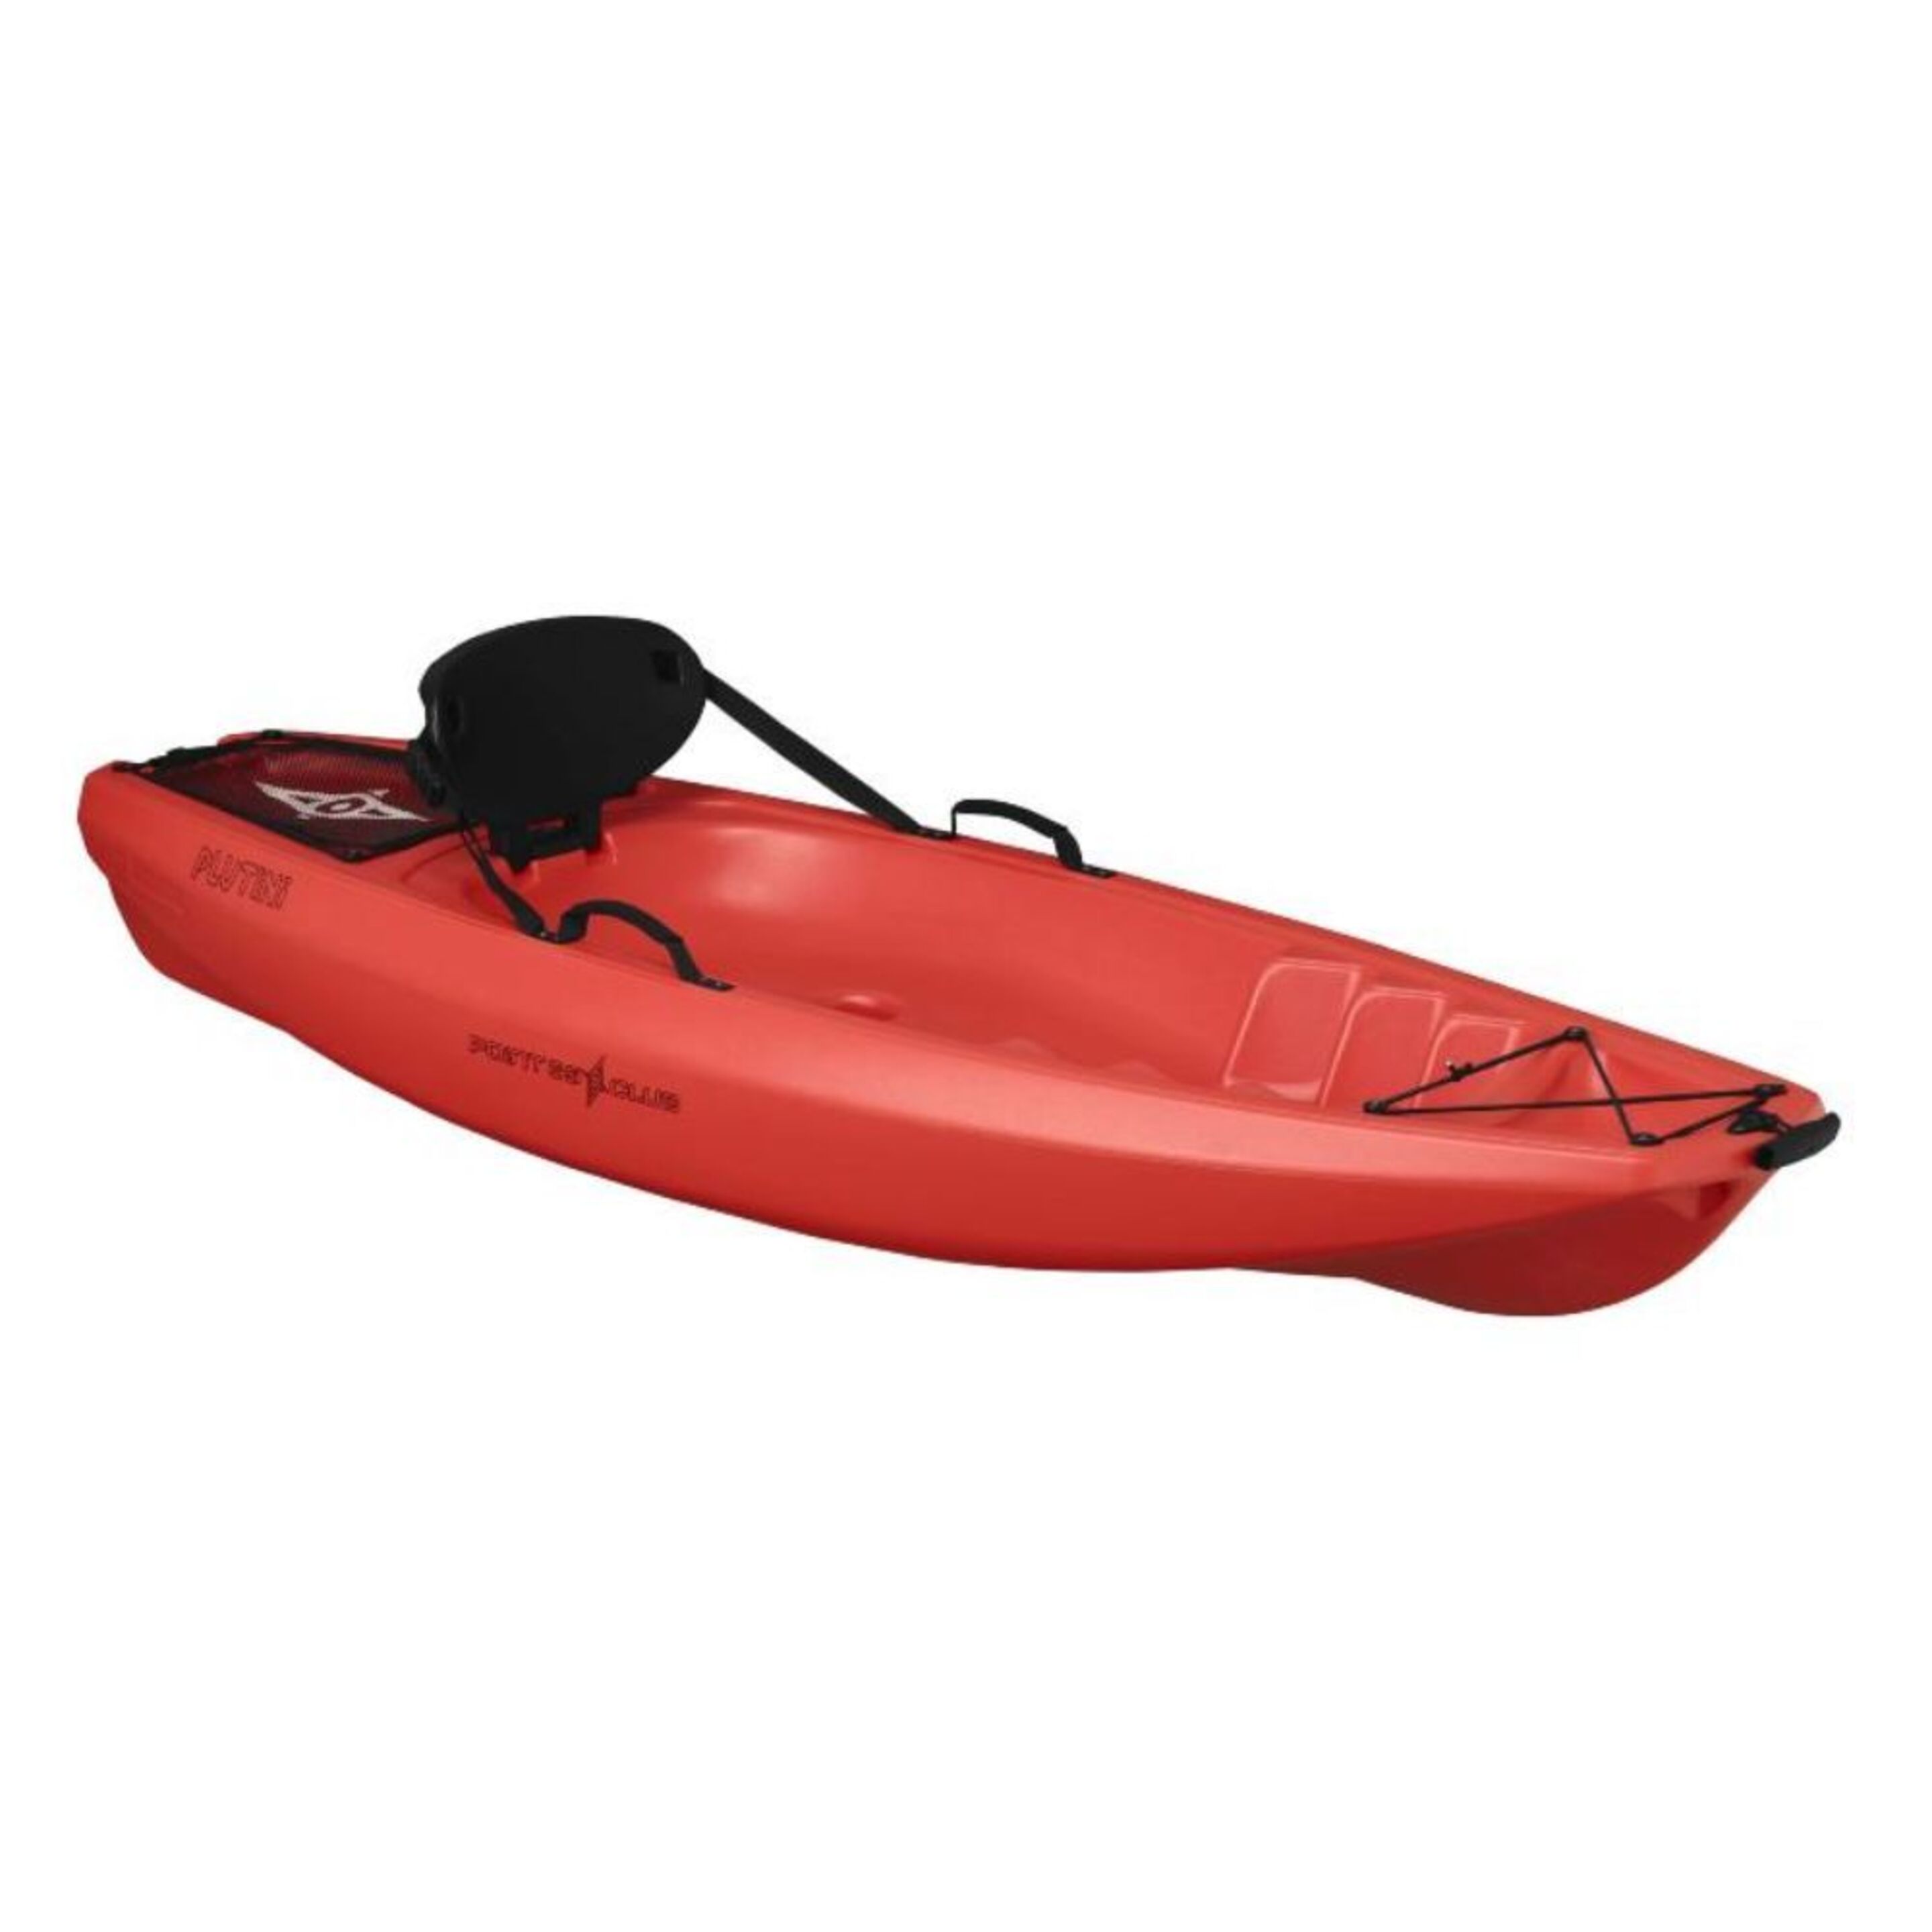 Kayak Rigido Point 65 Para Niños - rojo - 